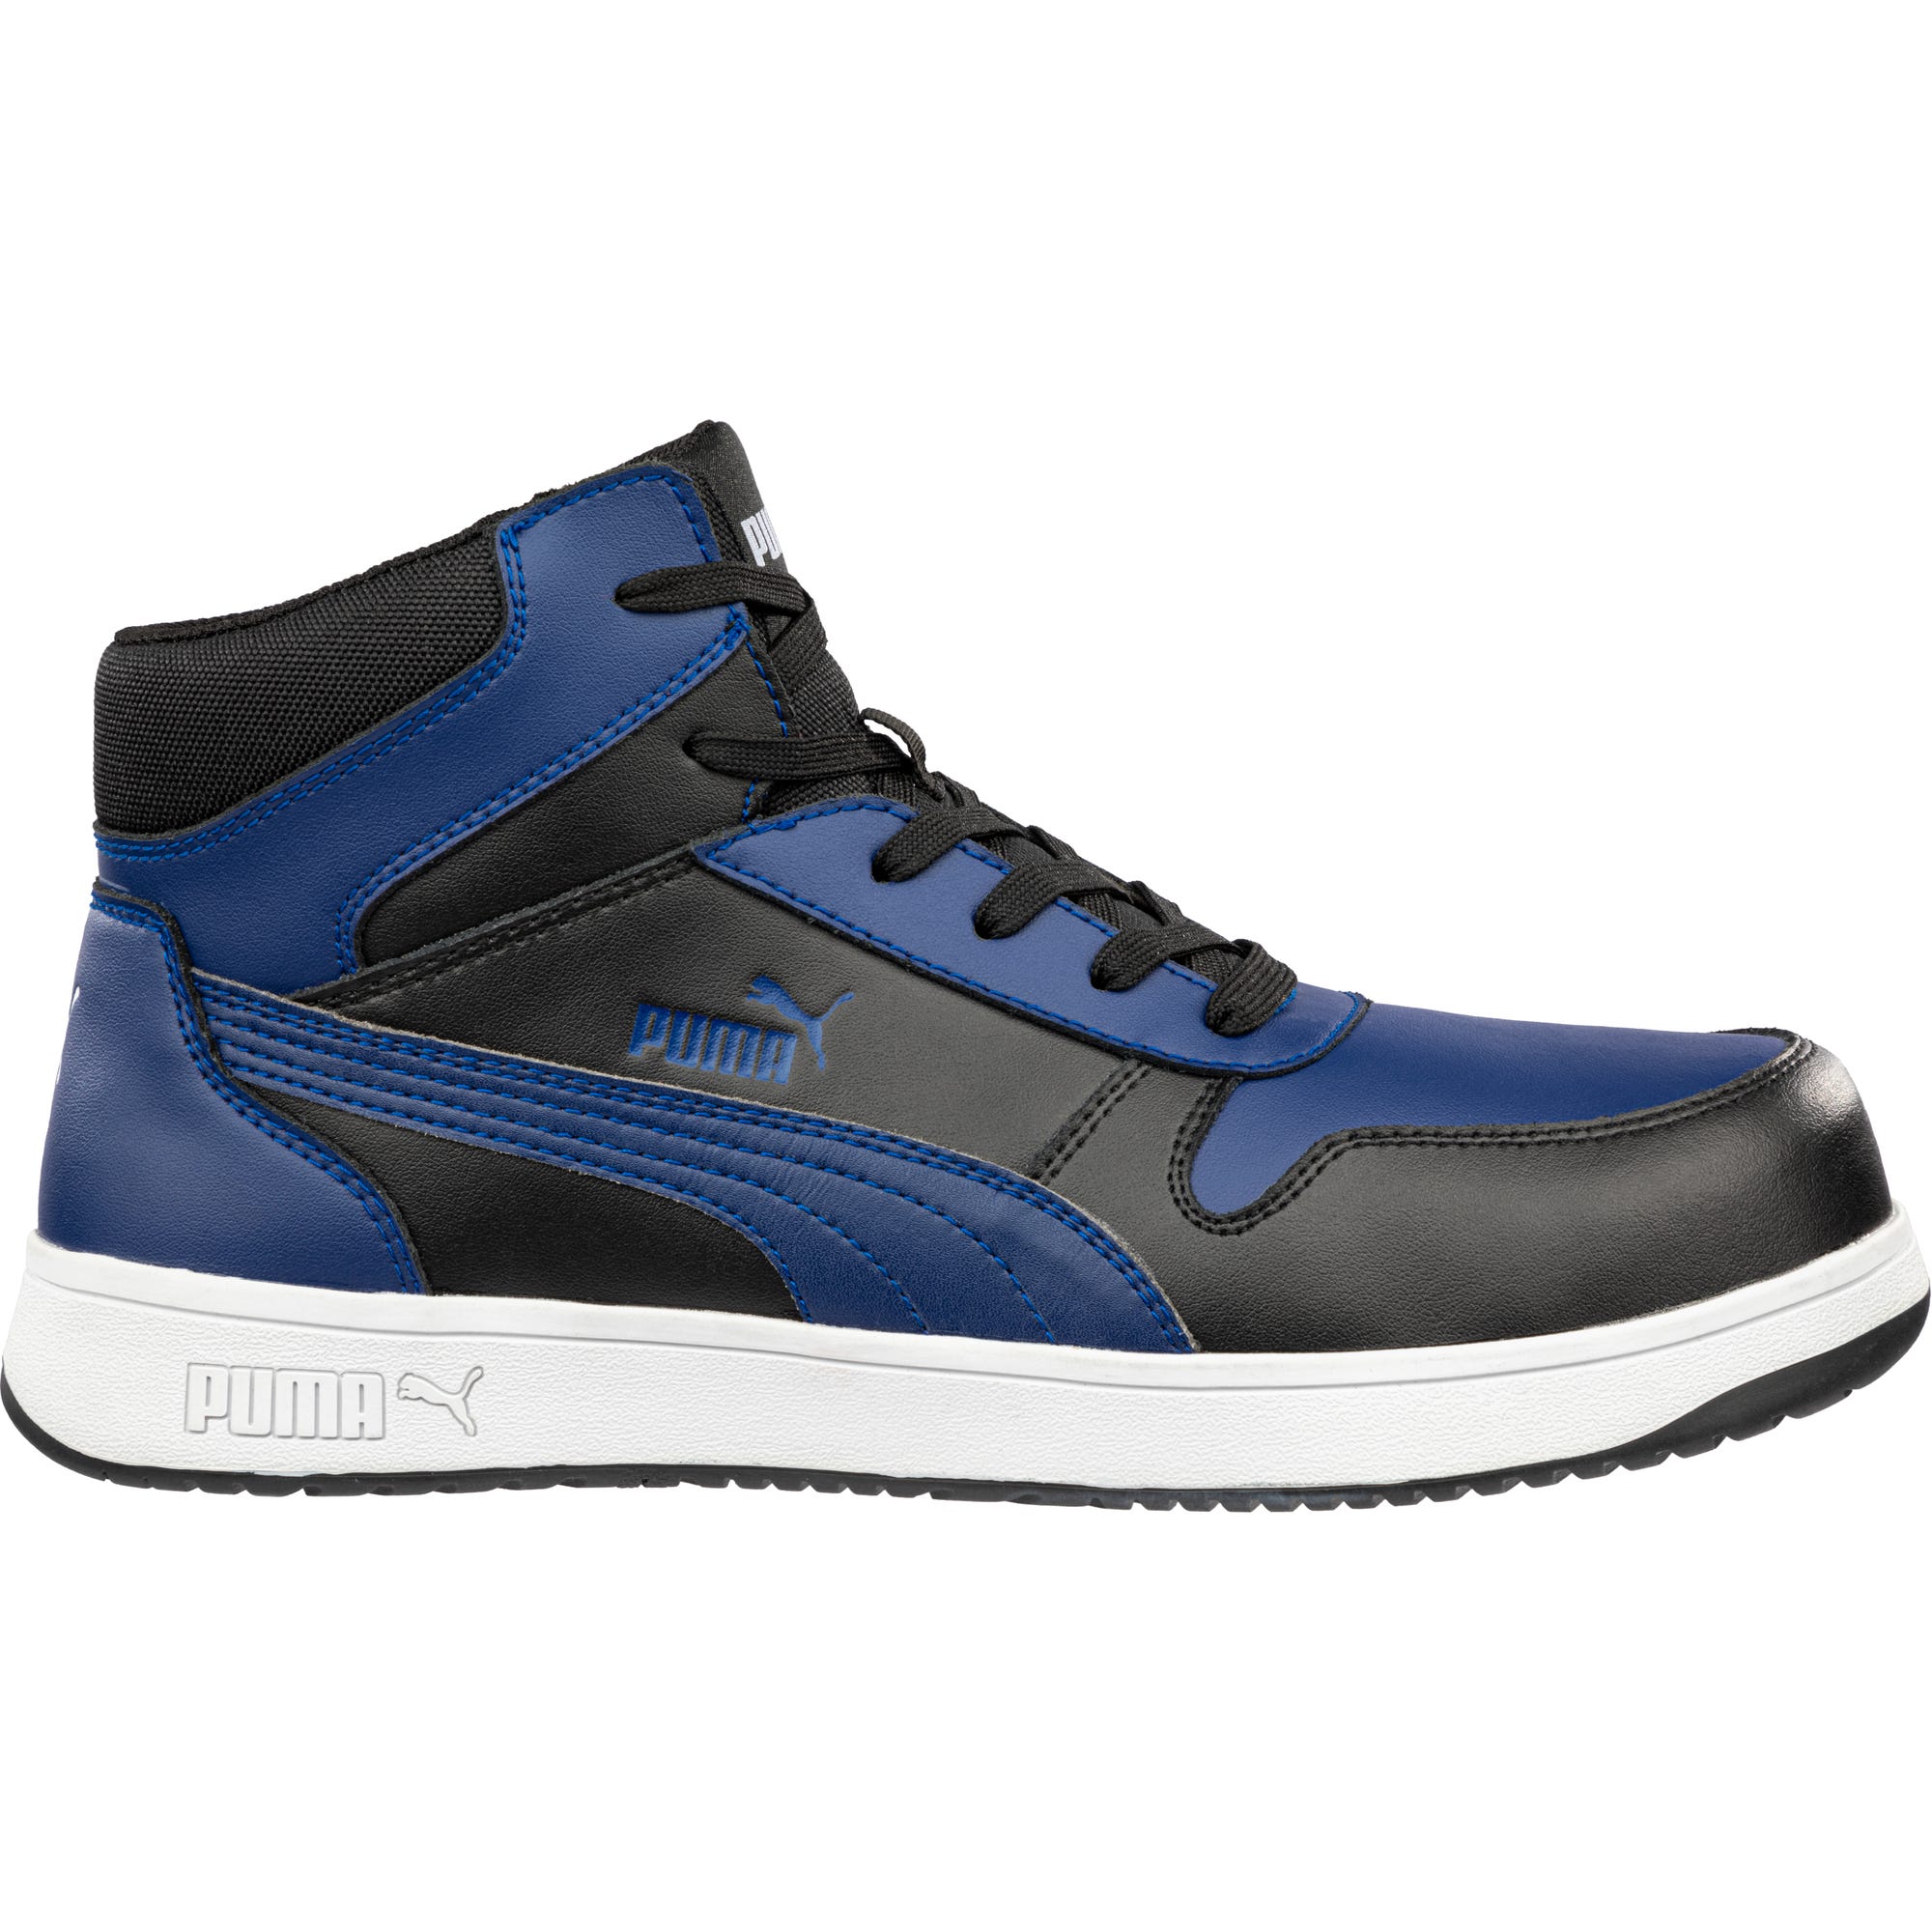 Chaussures de sécurité FRONTCOURT MID S3PL ESD FO HRO SR - bleu/noir 47 3